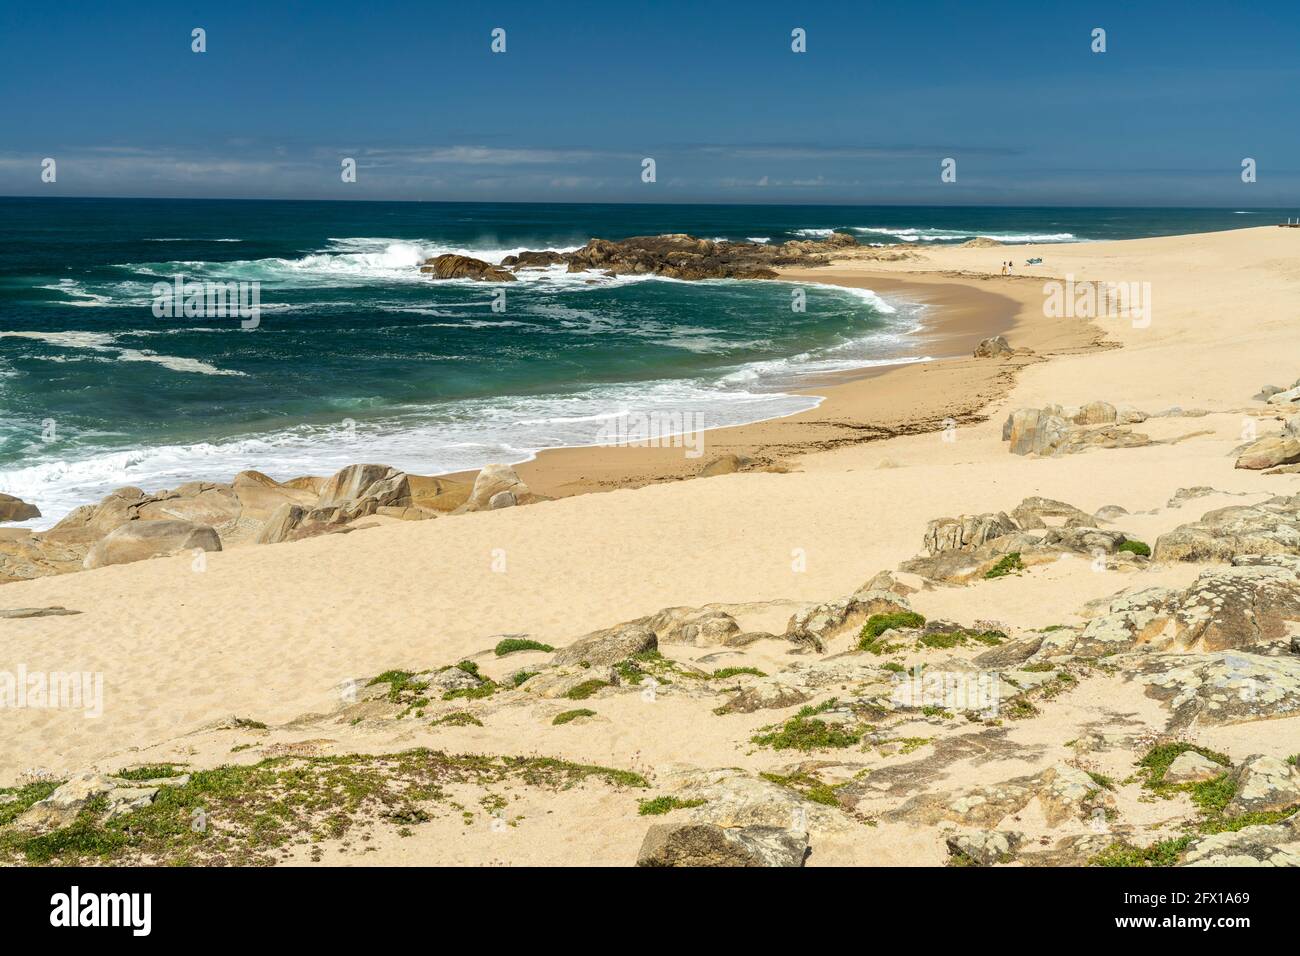 Der Strand Praia do Seca, Vila do Conde, Portugal, Europa | Plage de Praia do Seca, Vila do Conde, Portugal, Europe Banque D'Images